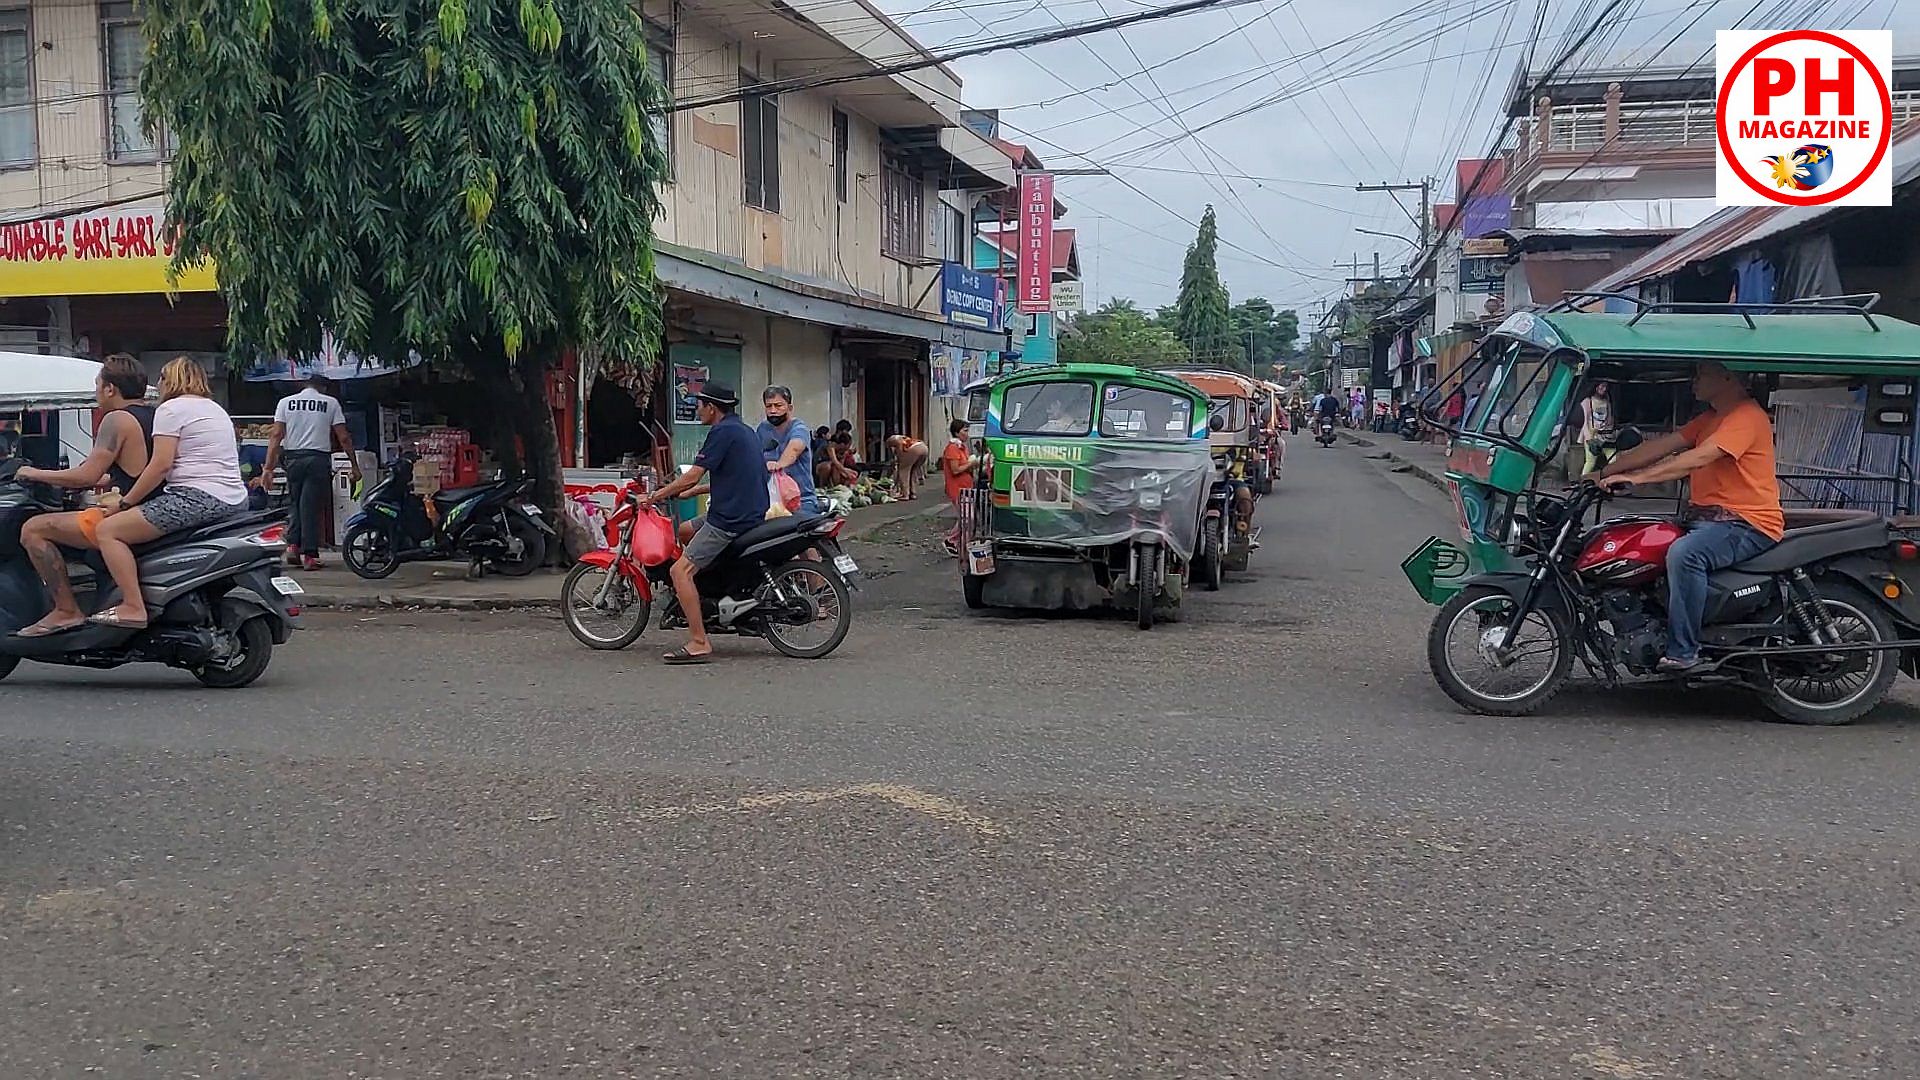 PHILIPPINEN MAGAZIN - FOTOSERIE - Die Tricycles von Negros Oriental